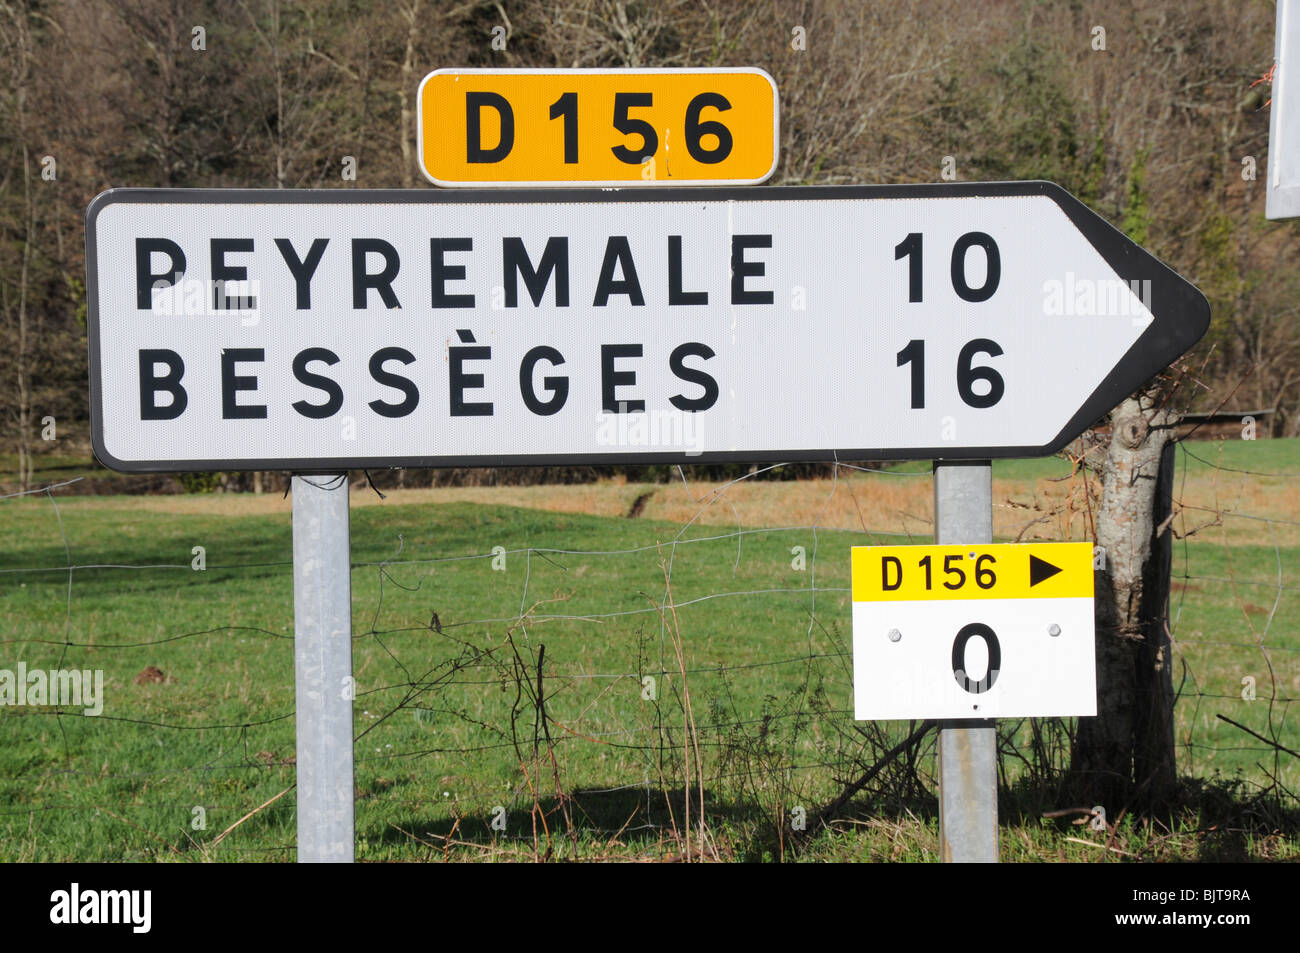 Kilometersteine, bis jetzt ikonischen am Straßenrand Marker in ganz Frankreich, wurden herausgerissen und durch Marker-Panels wie folgt ersetzt. Stockfoto